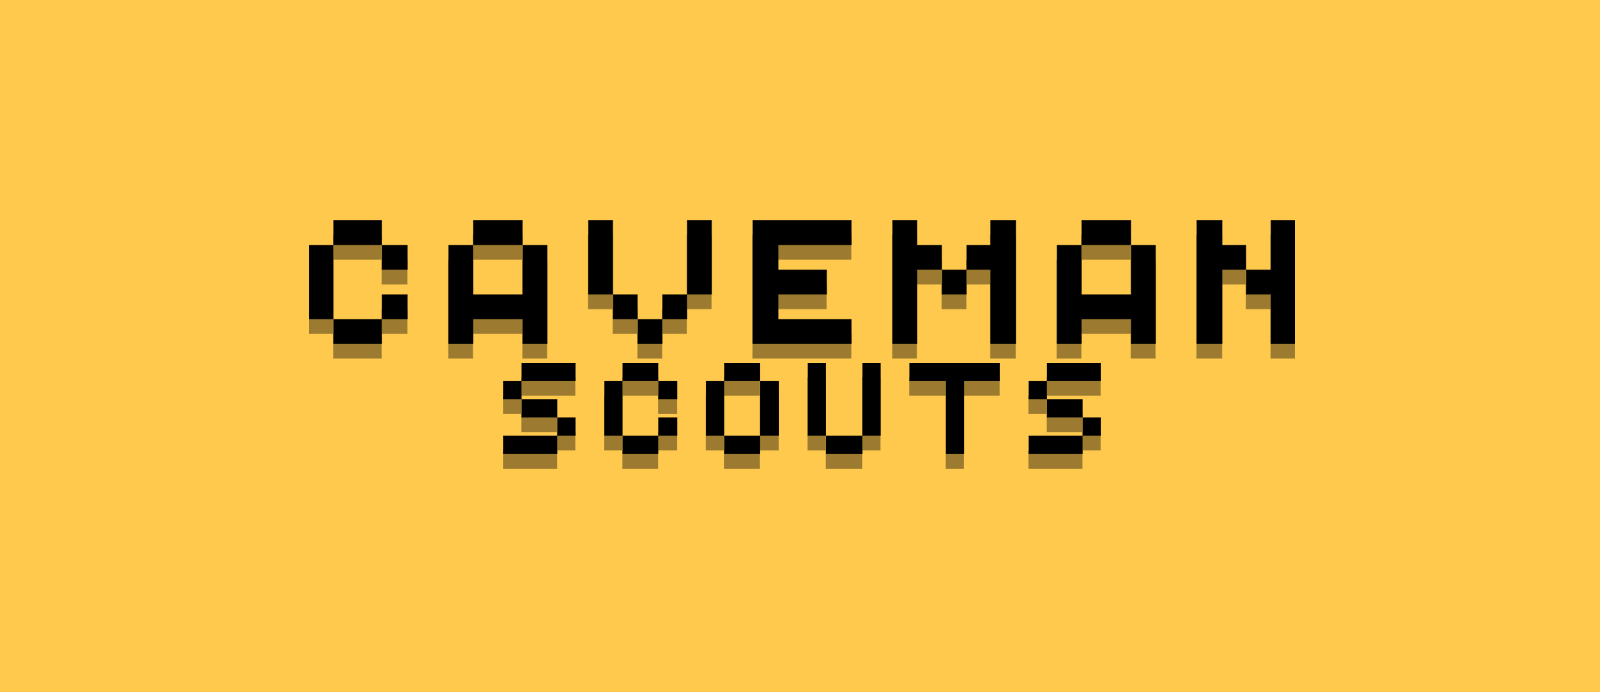 Caveman Scouts